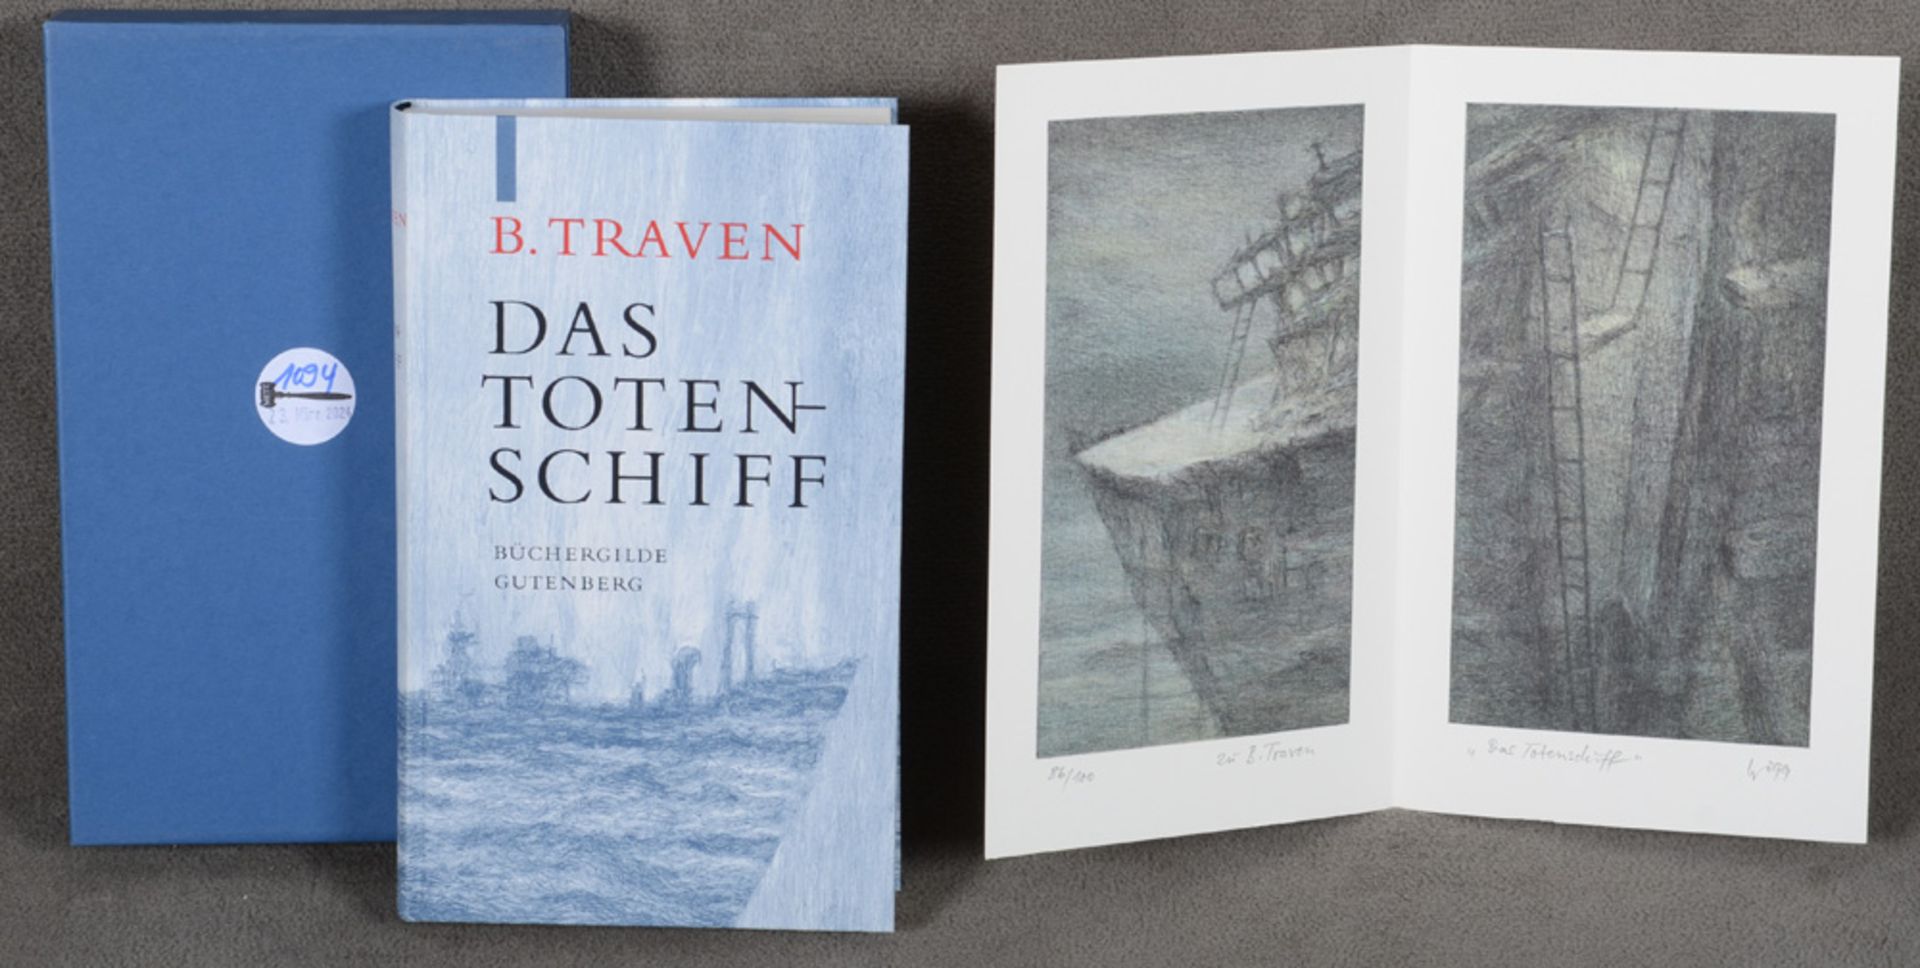 B. Traven, „Das Totenschiff“ mit Bildern von Jürgen Wölbing, Büchergilde Gutenberg 1999.